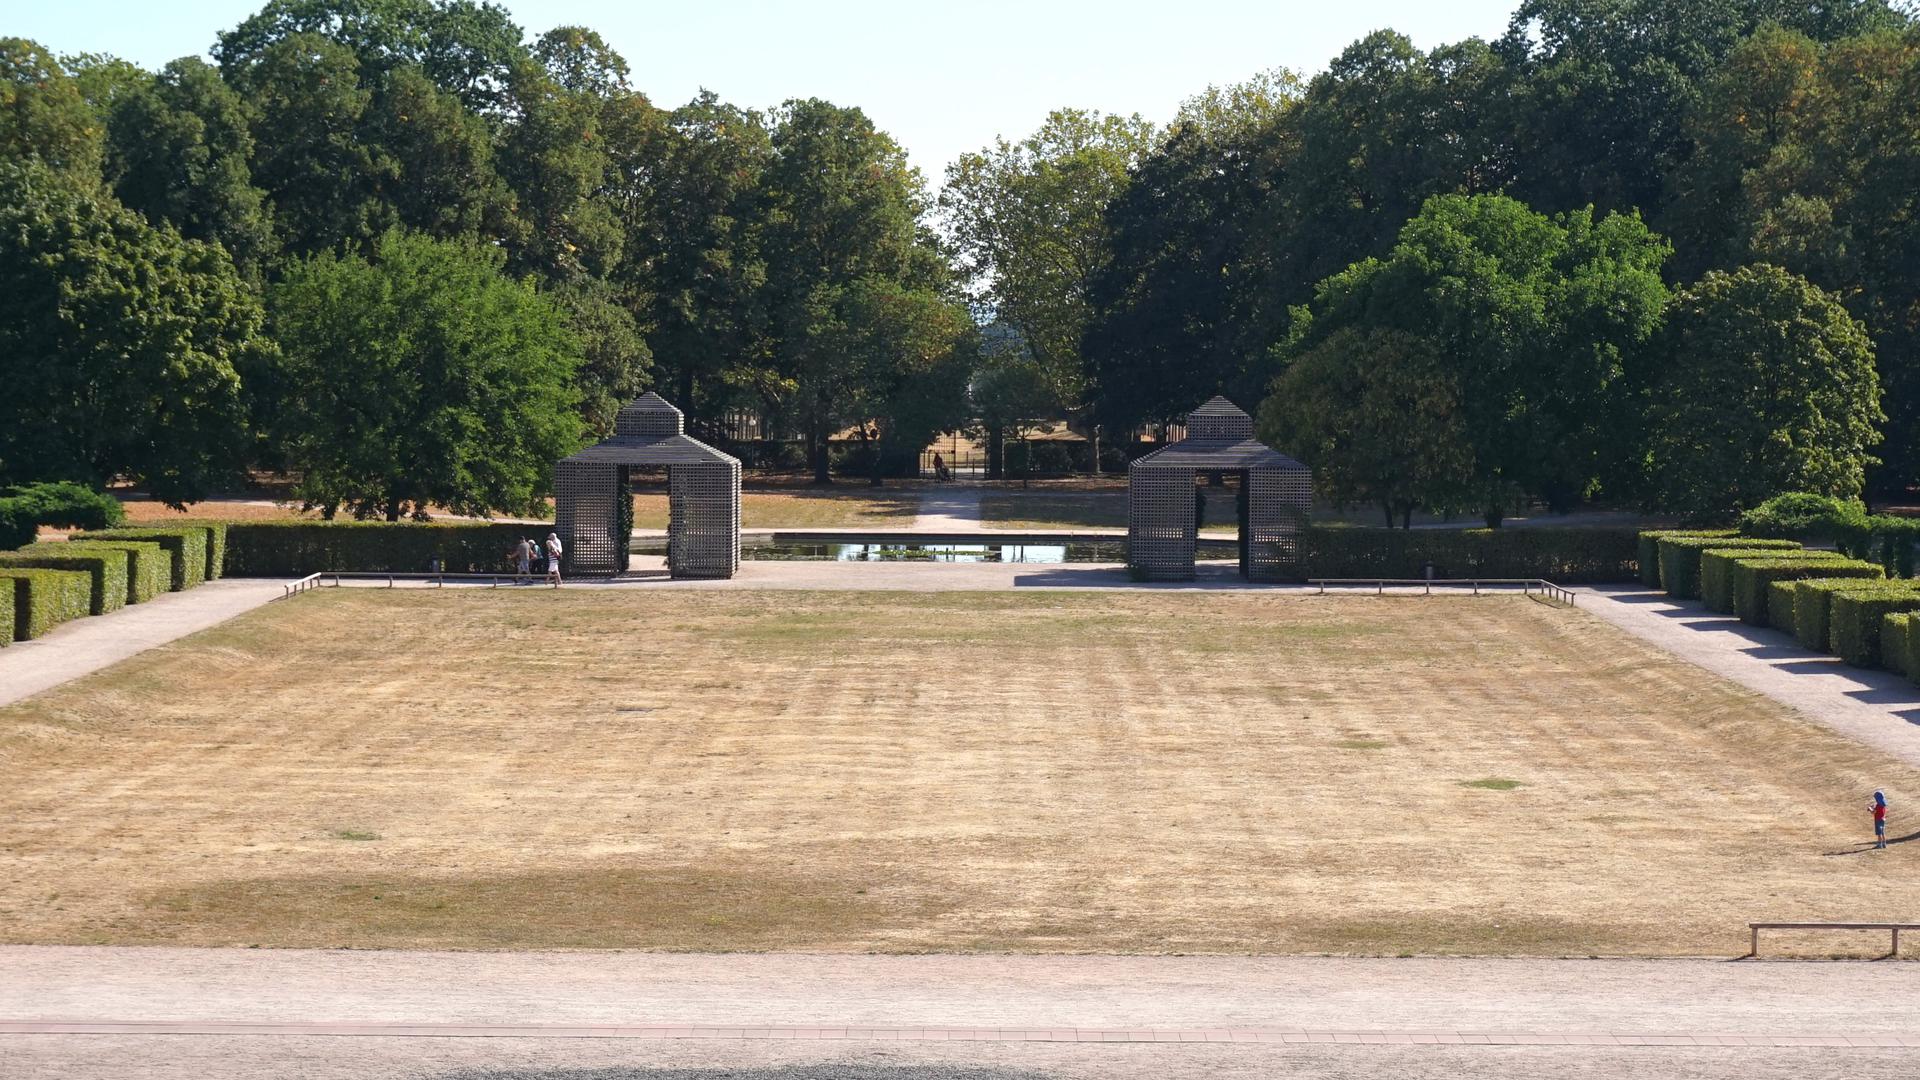 Kein schöner Anblick: Die große Rasenfläche im Schlosspark ist verdorrt. Die Rastatter waren in den vergangenen Jahren ein schönes sattes Grün gewohnt.  